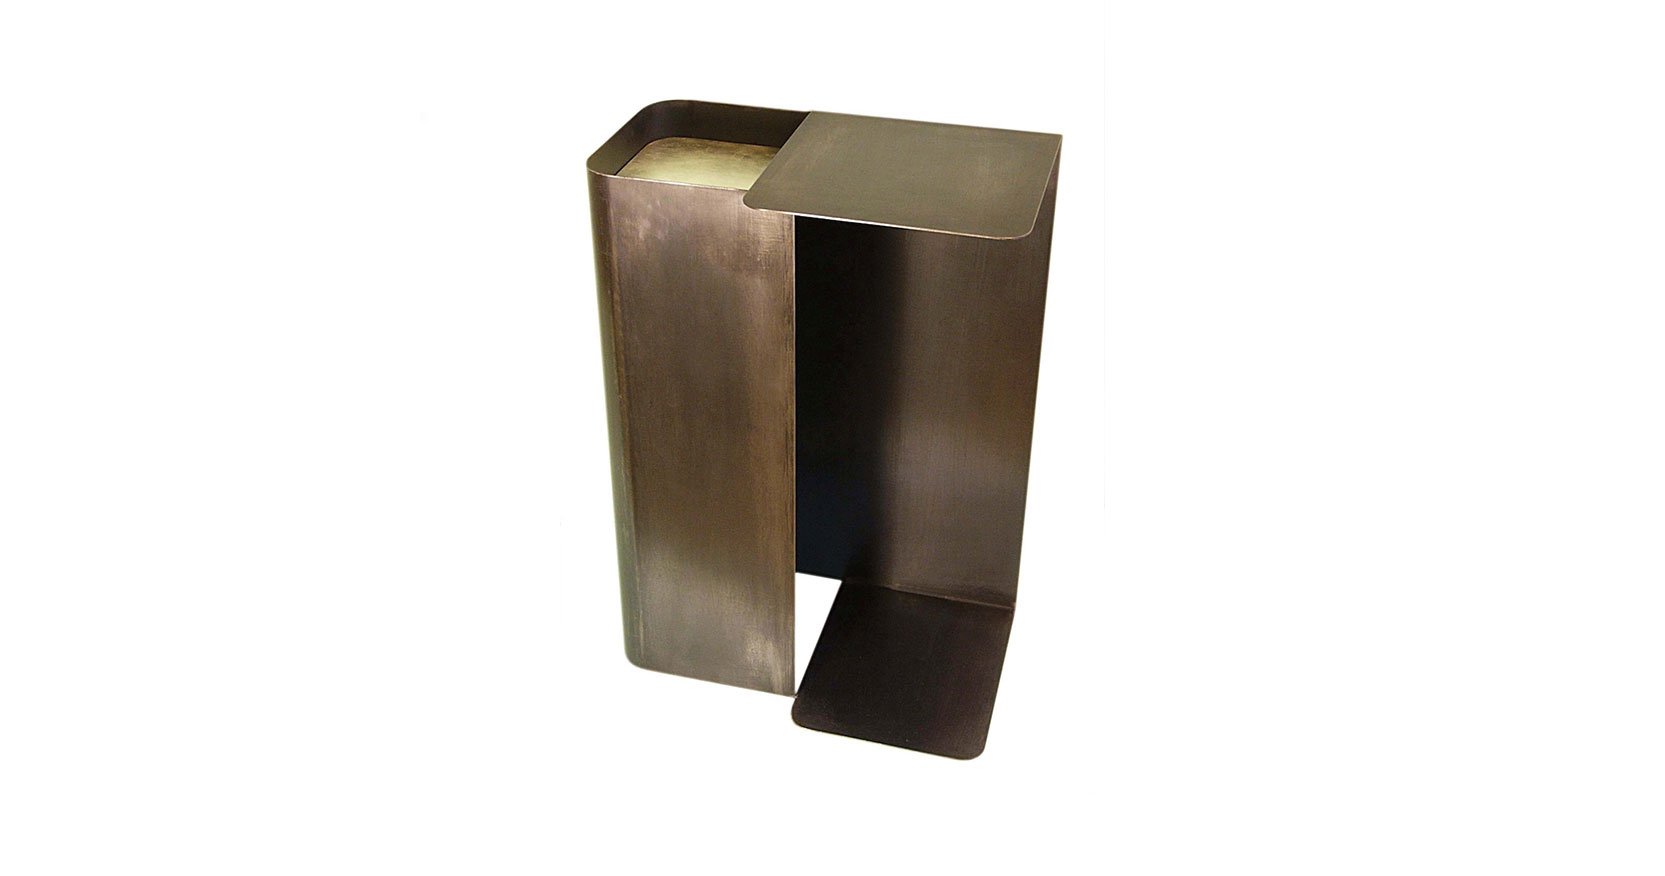 Eric Jourdan, petite table de style architectural géométrique en acier plié, avec une partie encastrée carrée argentée ,et un pied rectangulaire en acier gris